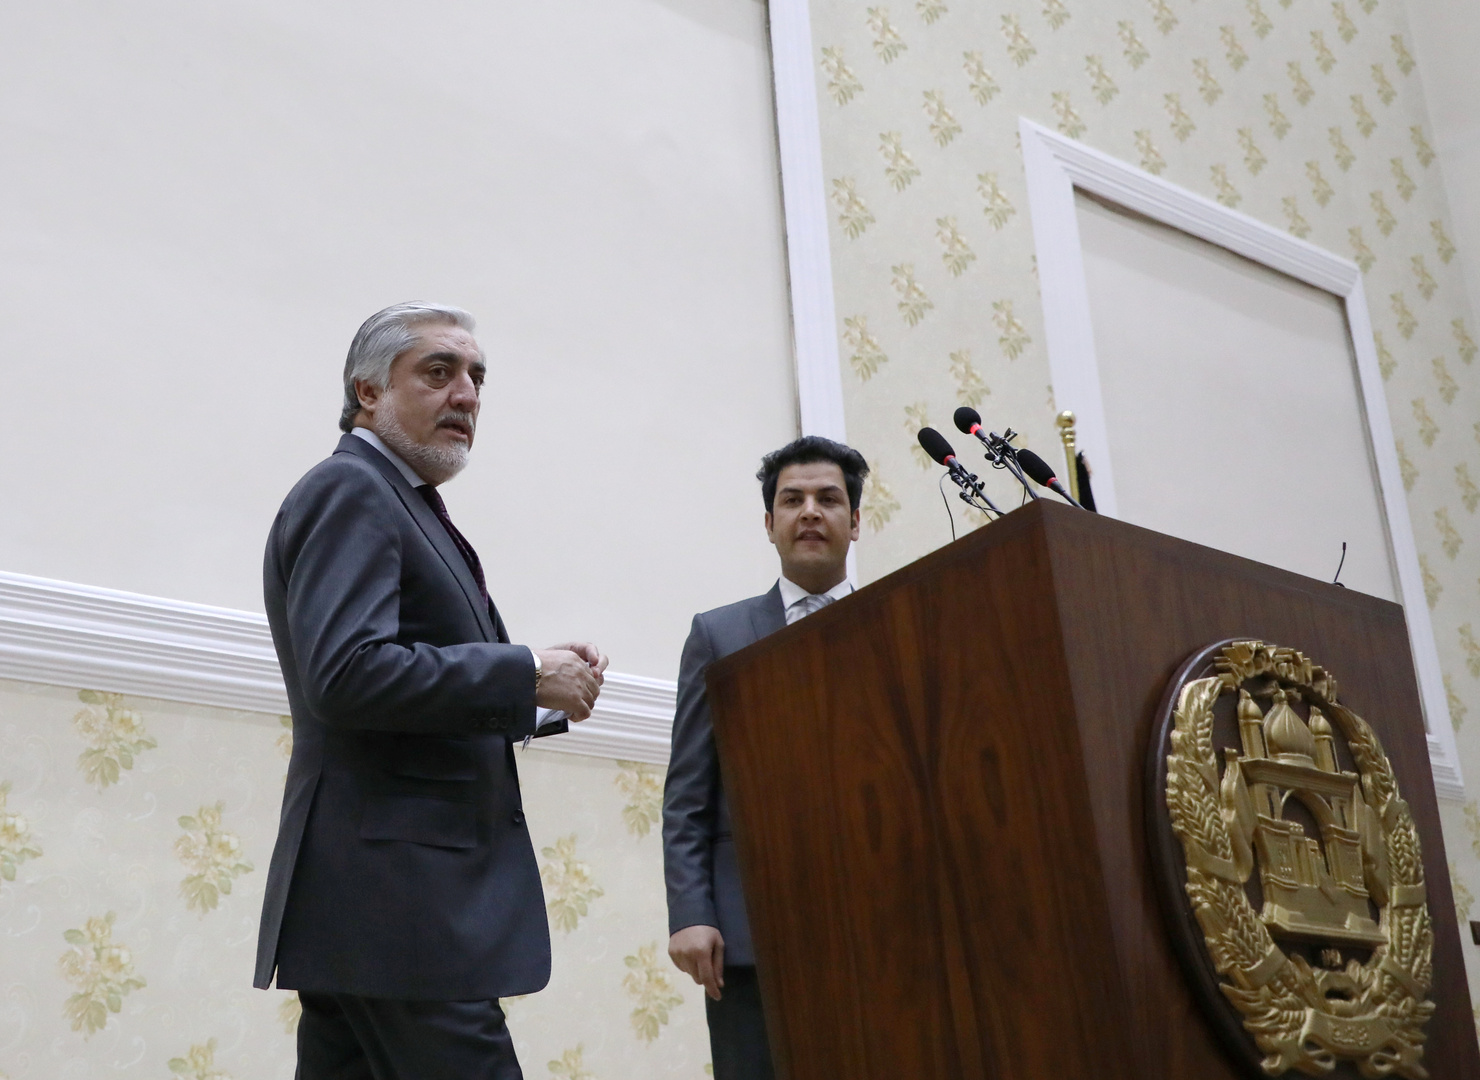 عبد الله يعلن فوزه في الانتخابات الرئاسية الأفغانية وتشكيل حكومة موازية